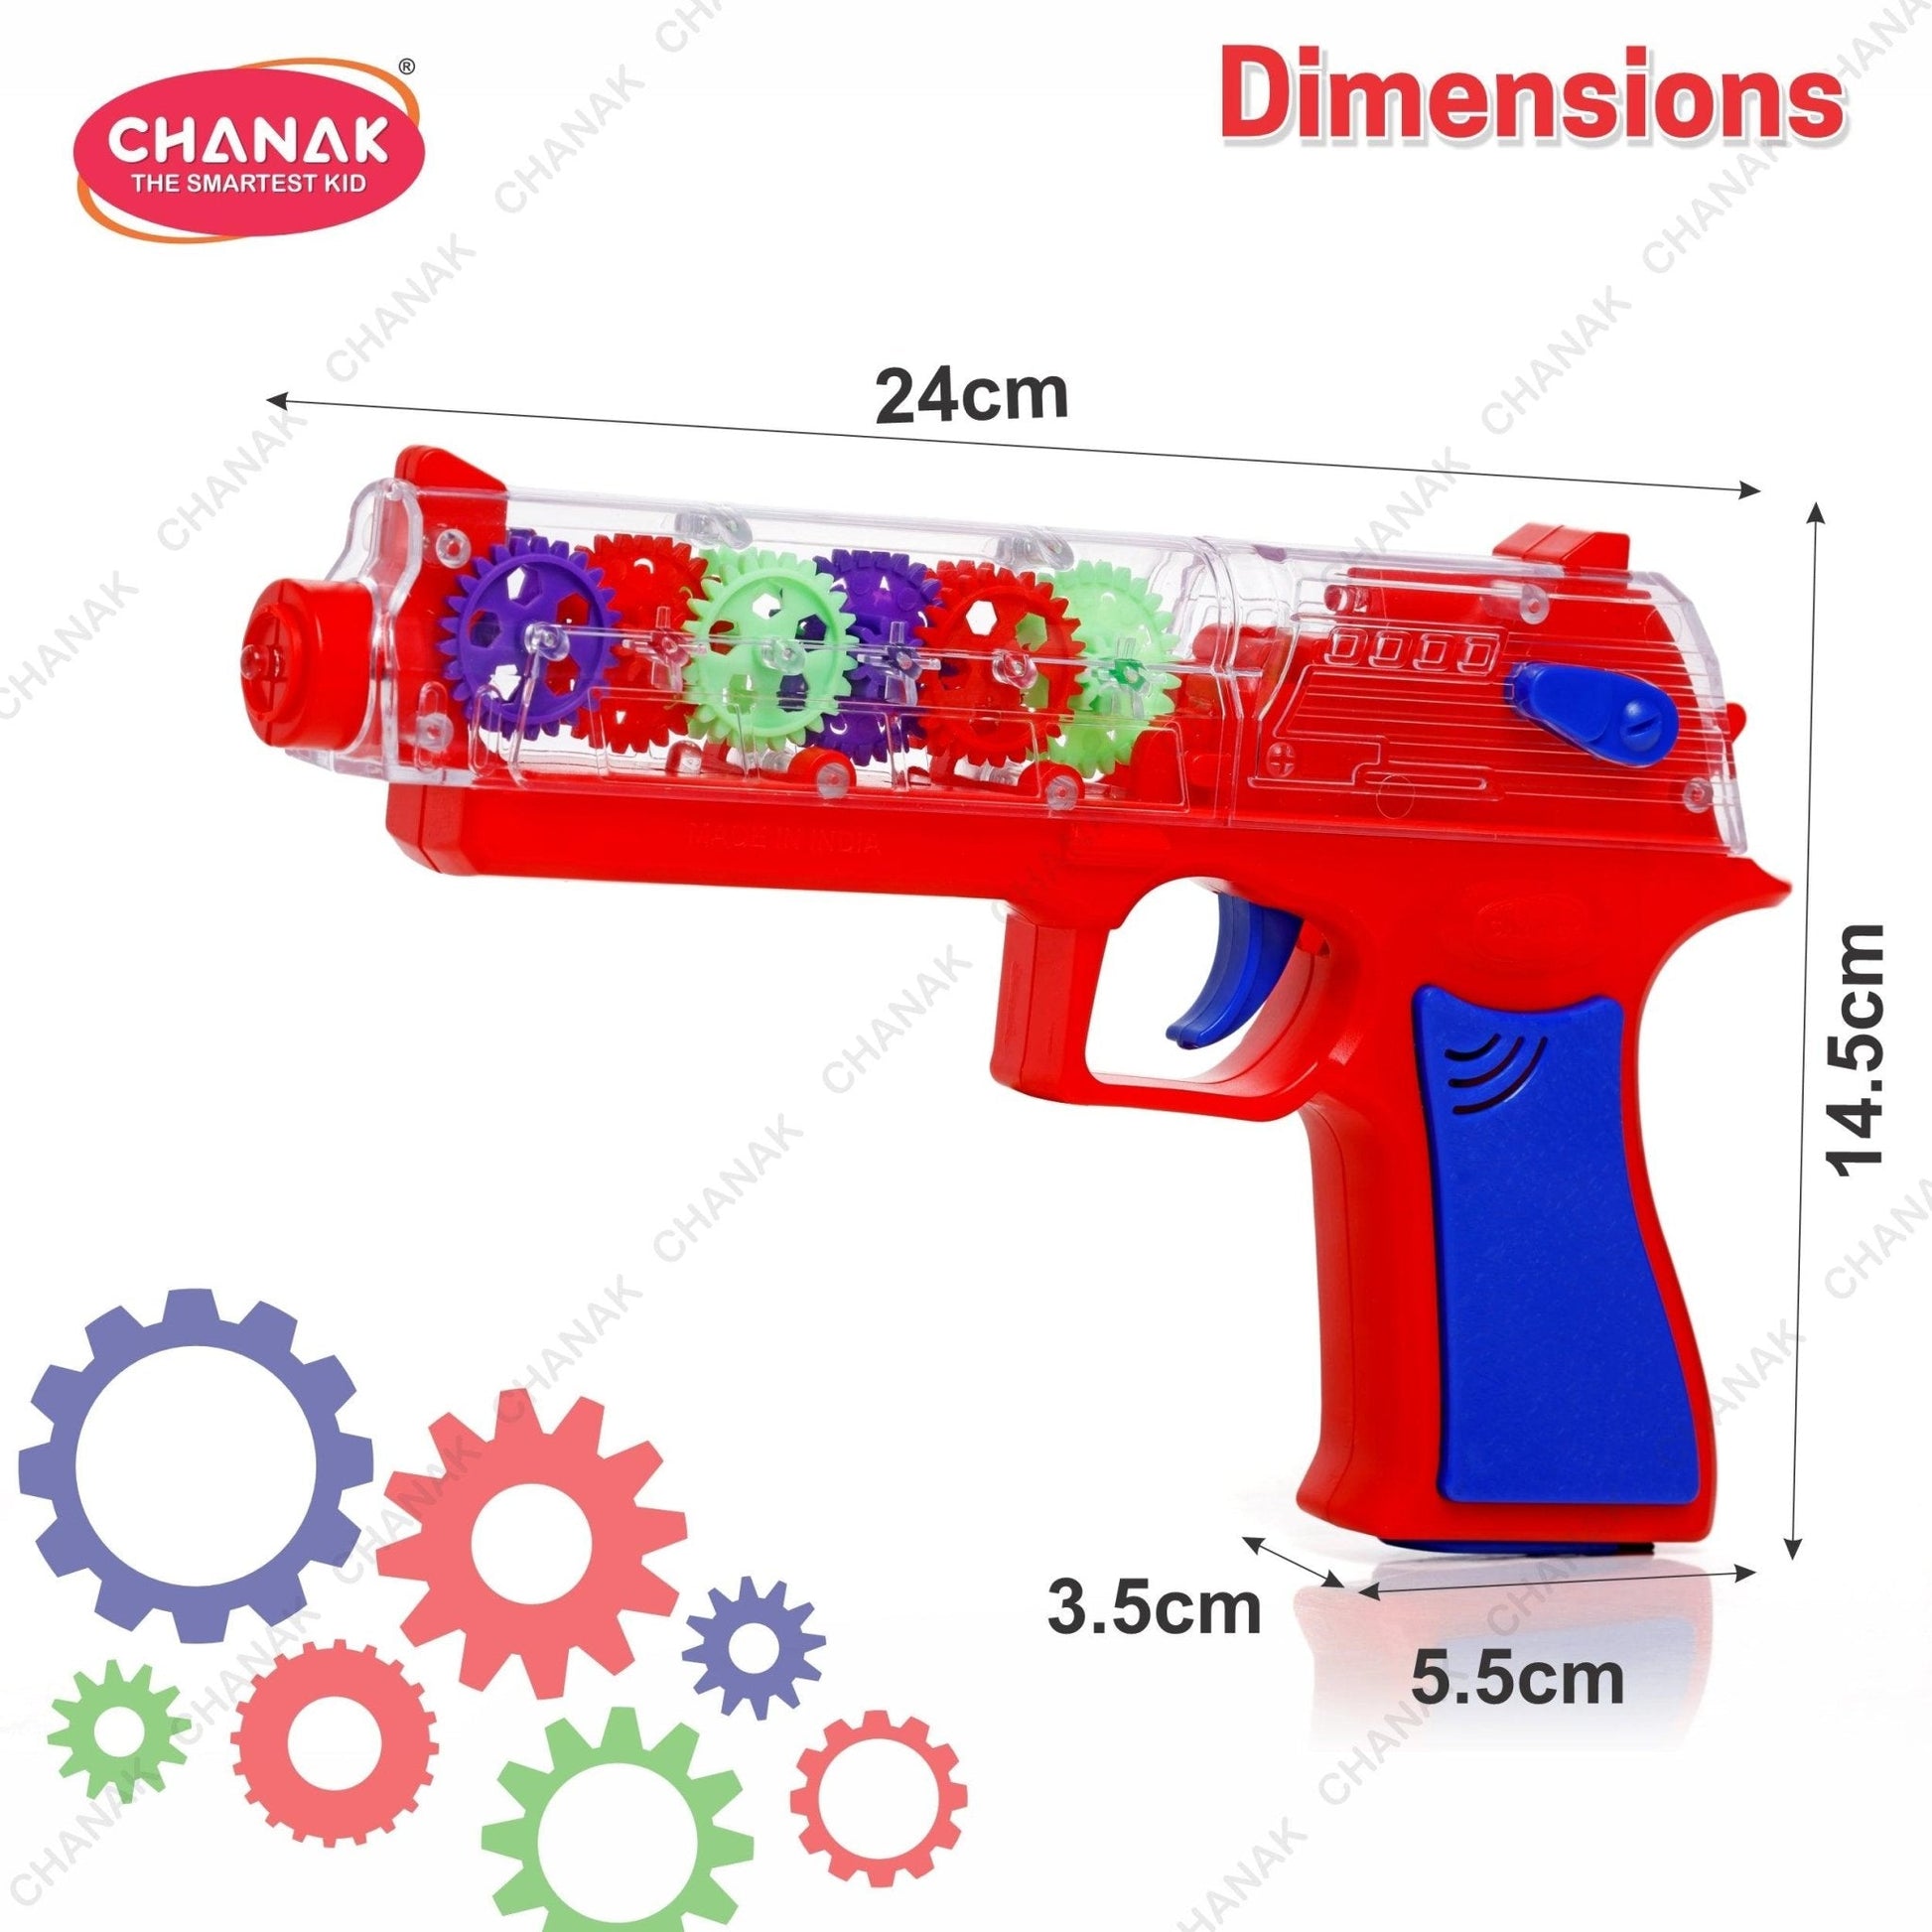 Chanak Transparent Gear Gun Toy for Kids (Red) - chanak